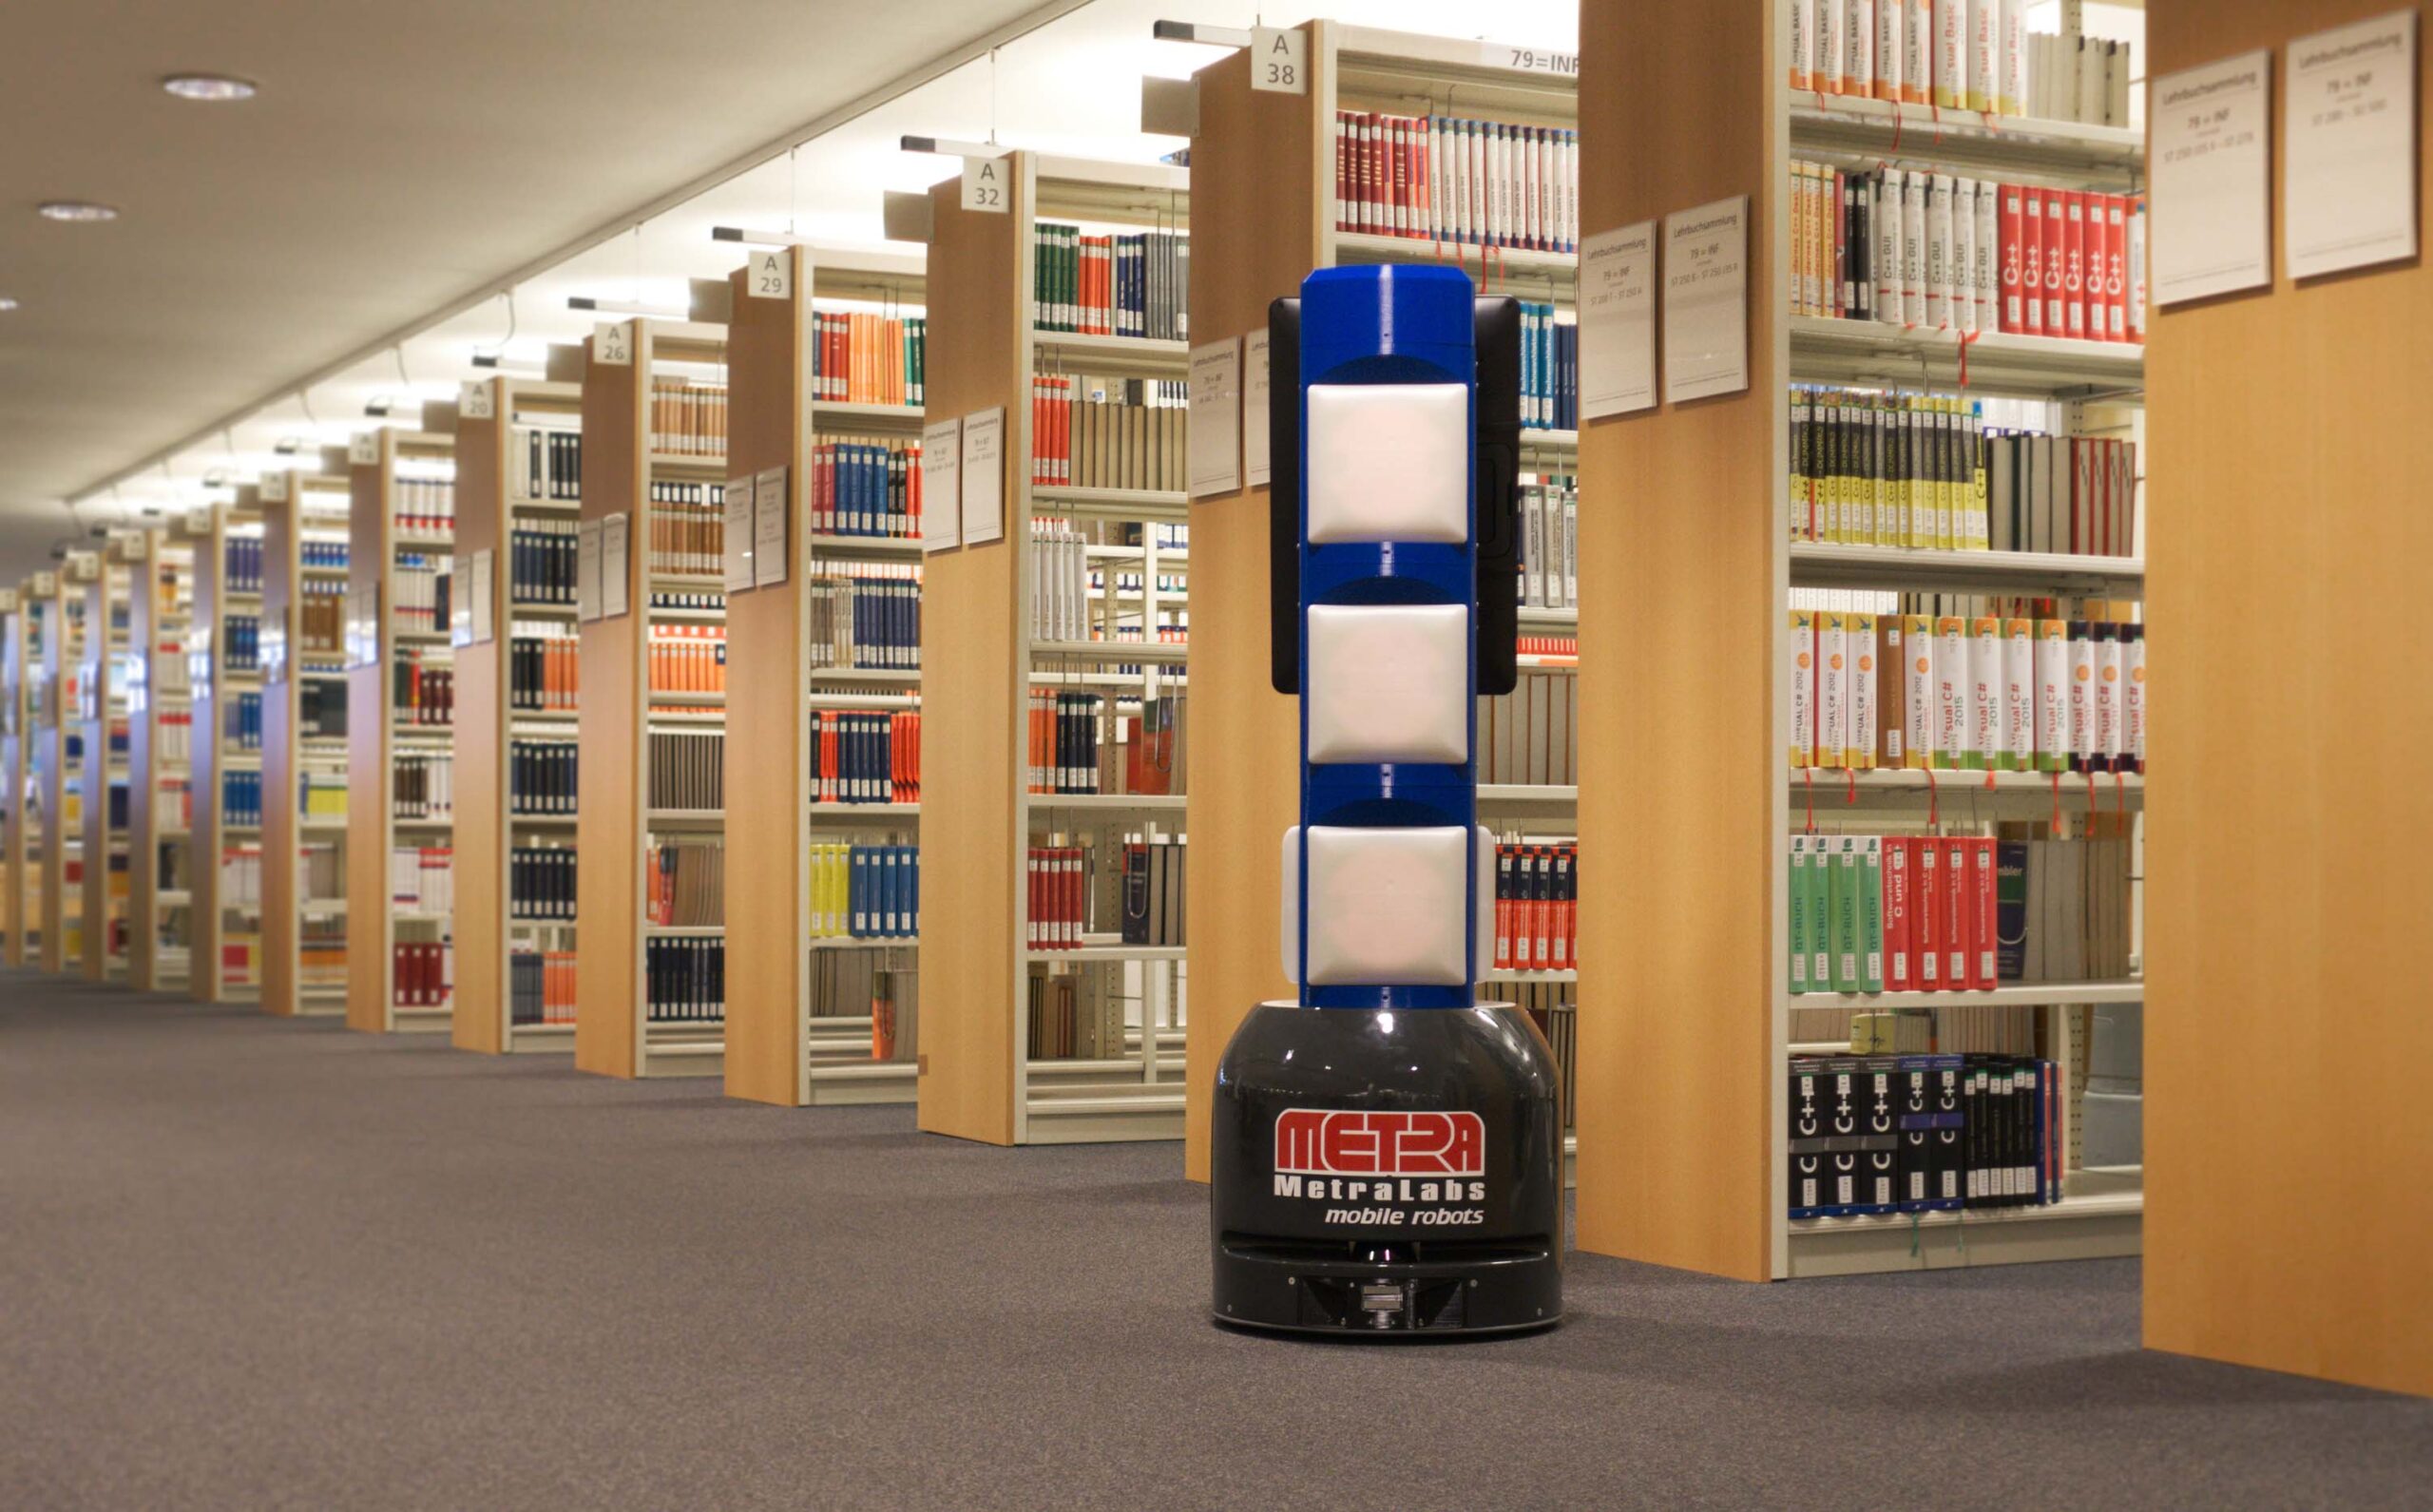 RoboLibri in a library 